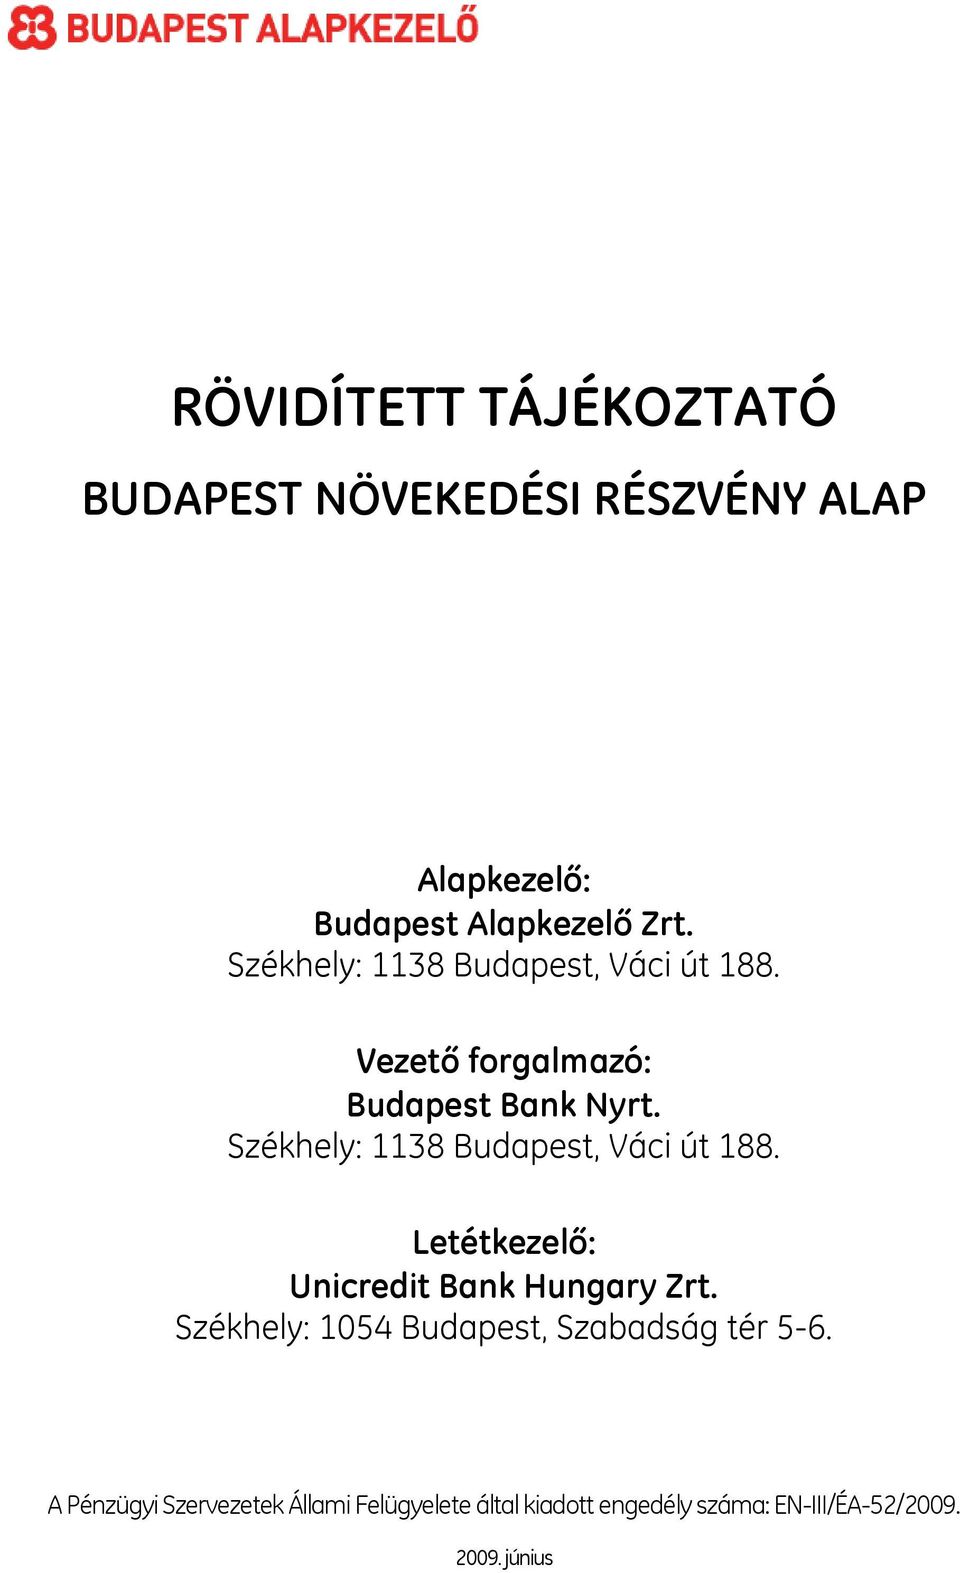 Székhely: 1138 Budapest, Váci út 188. Letétkezelő: Unicredit Bank Hungary Zrt.